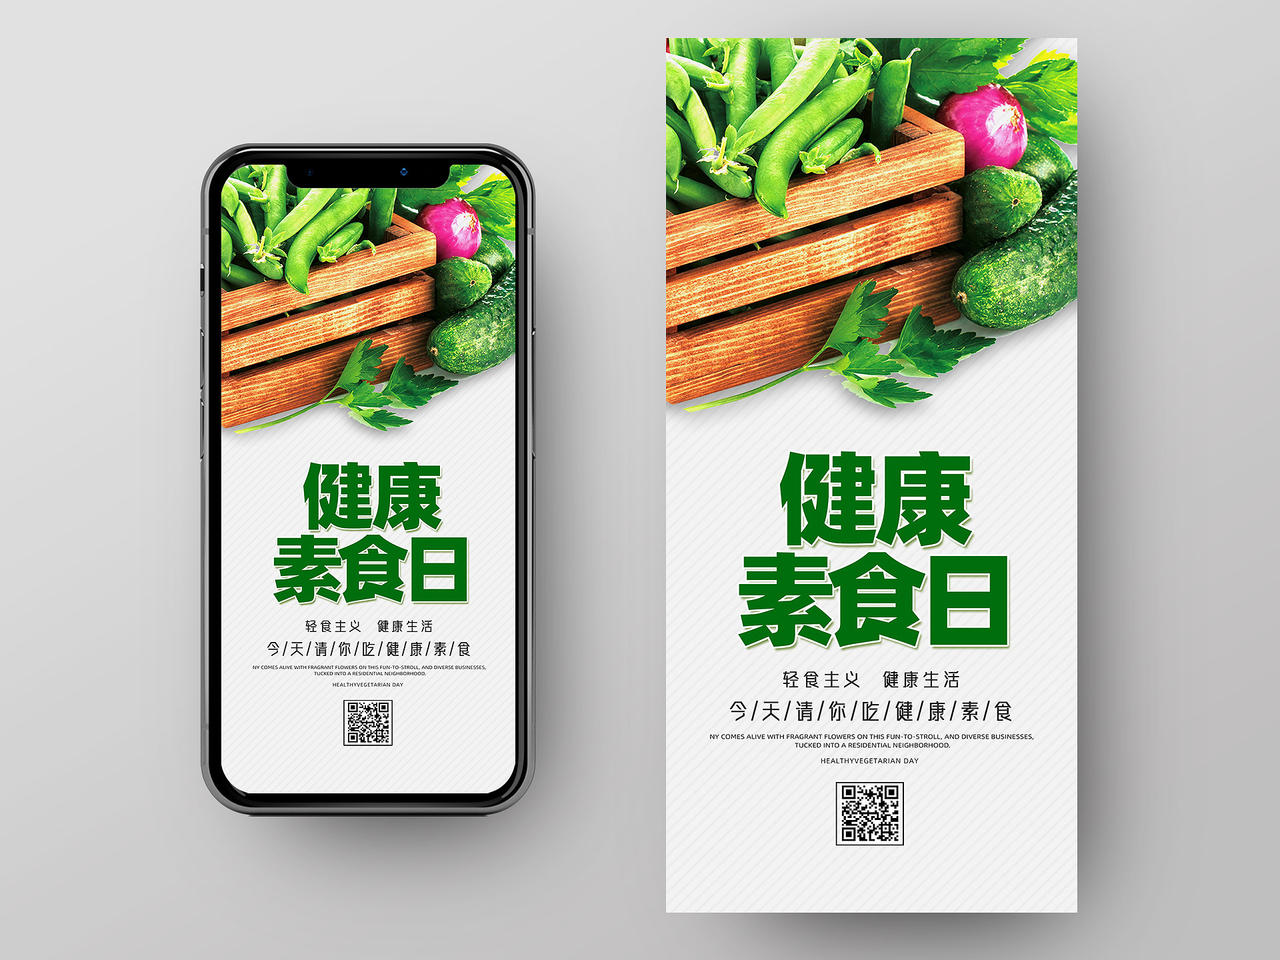 绿色简约健康素食日手机海报UI